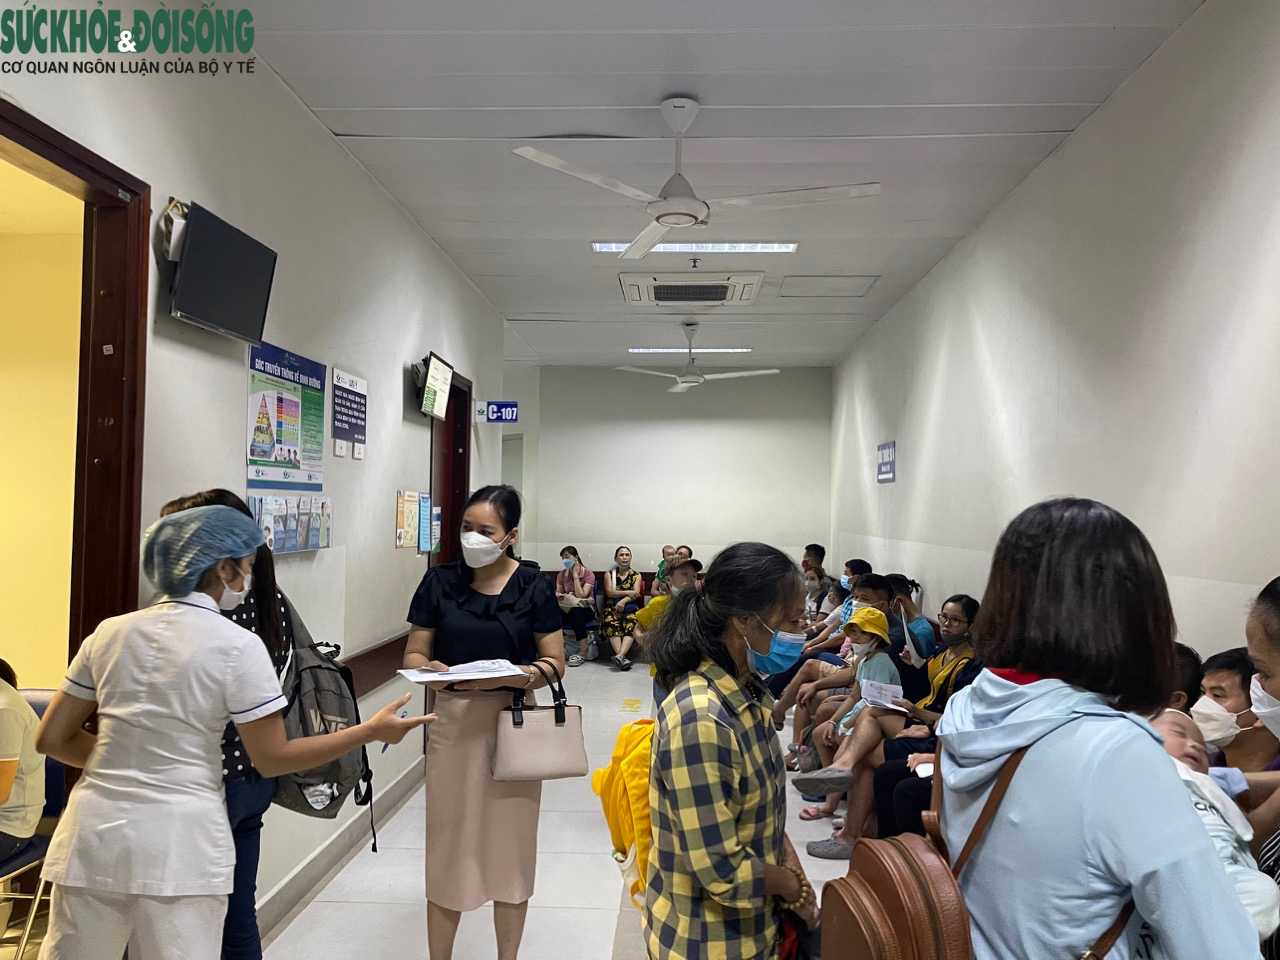 Nhiều bệnh viện tại Hà Nội quá tải do lượng bệnh nhi tăng đột biến - Ảnh 2.